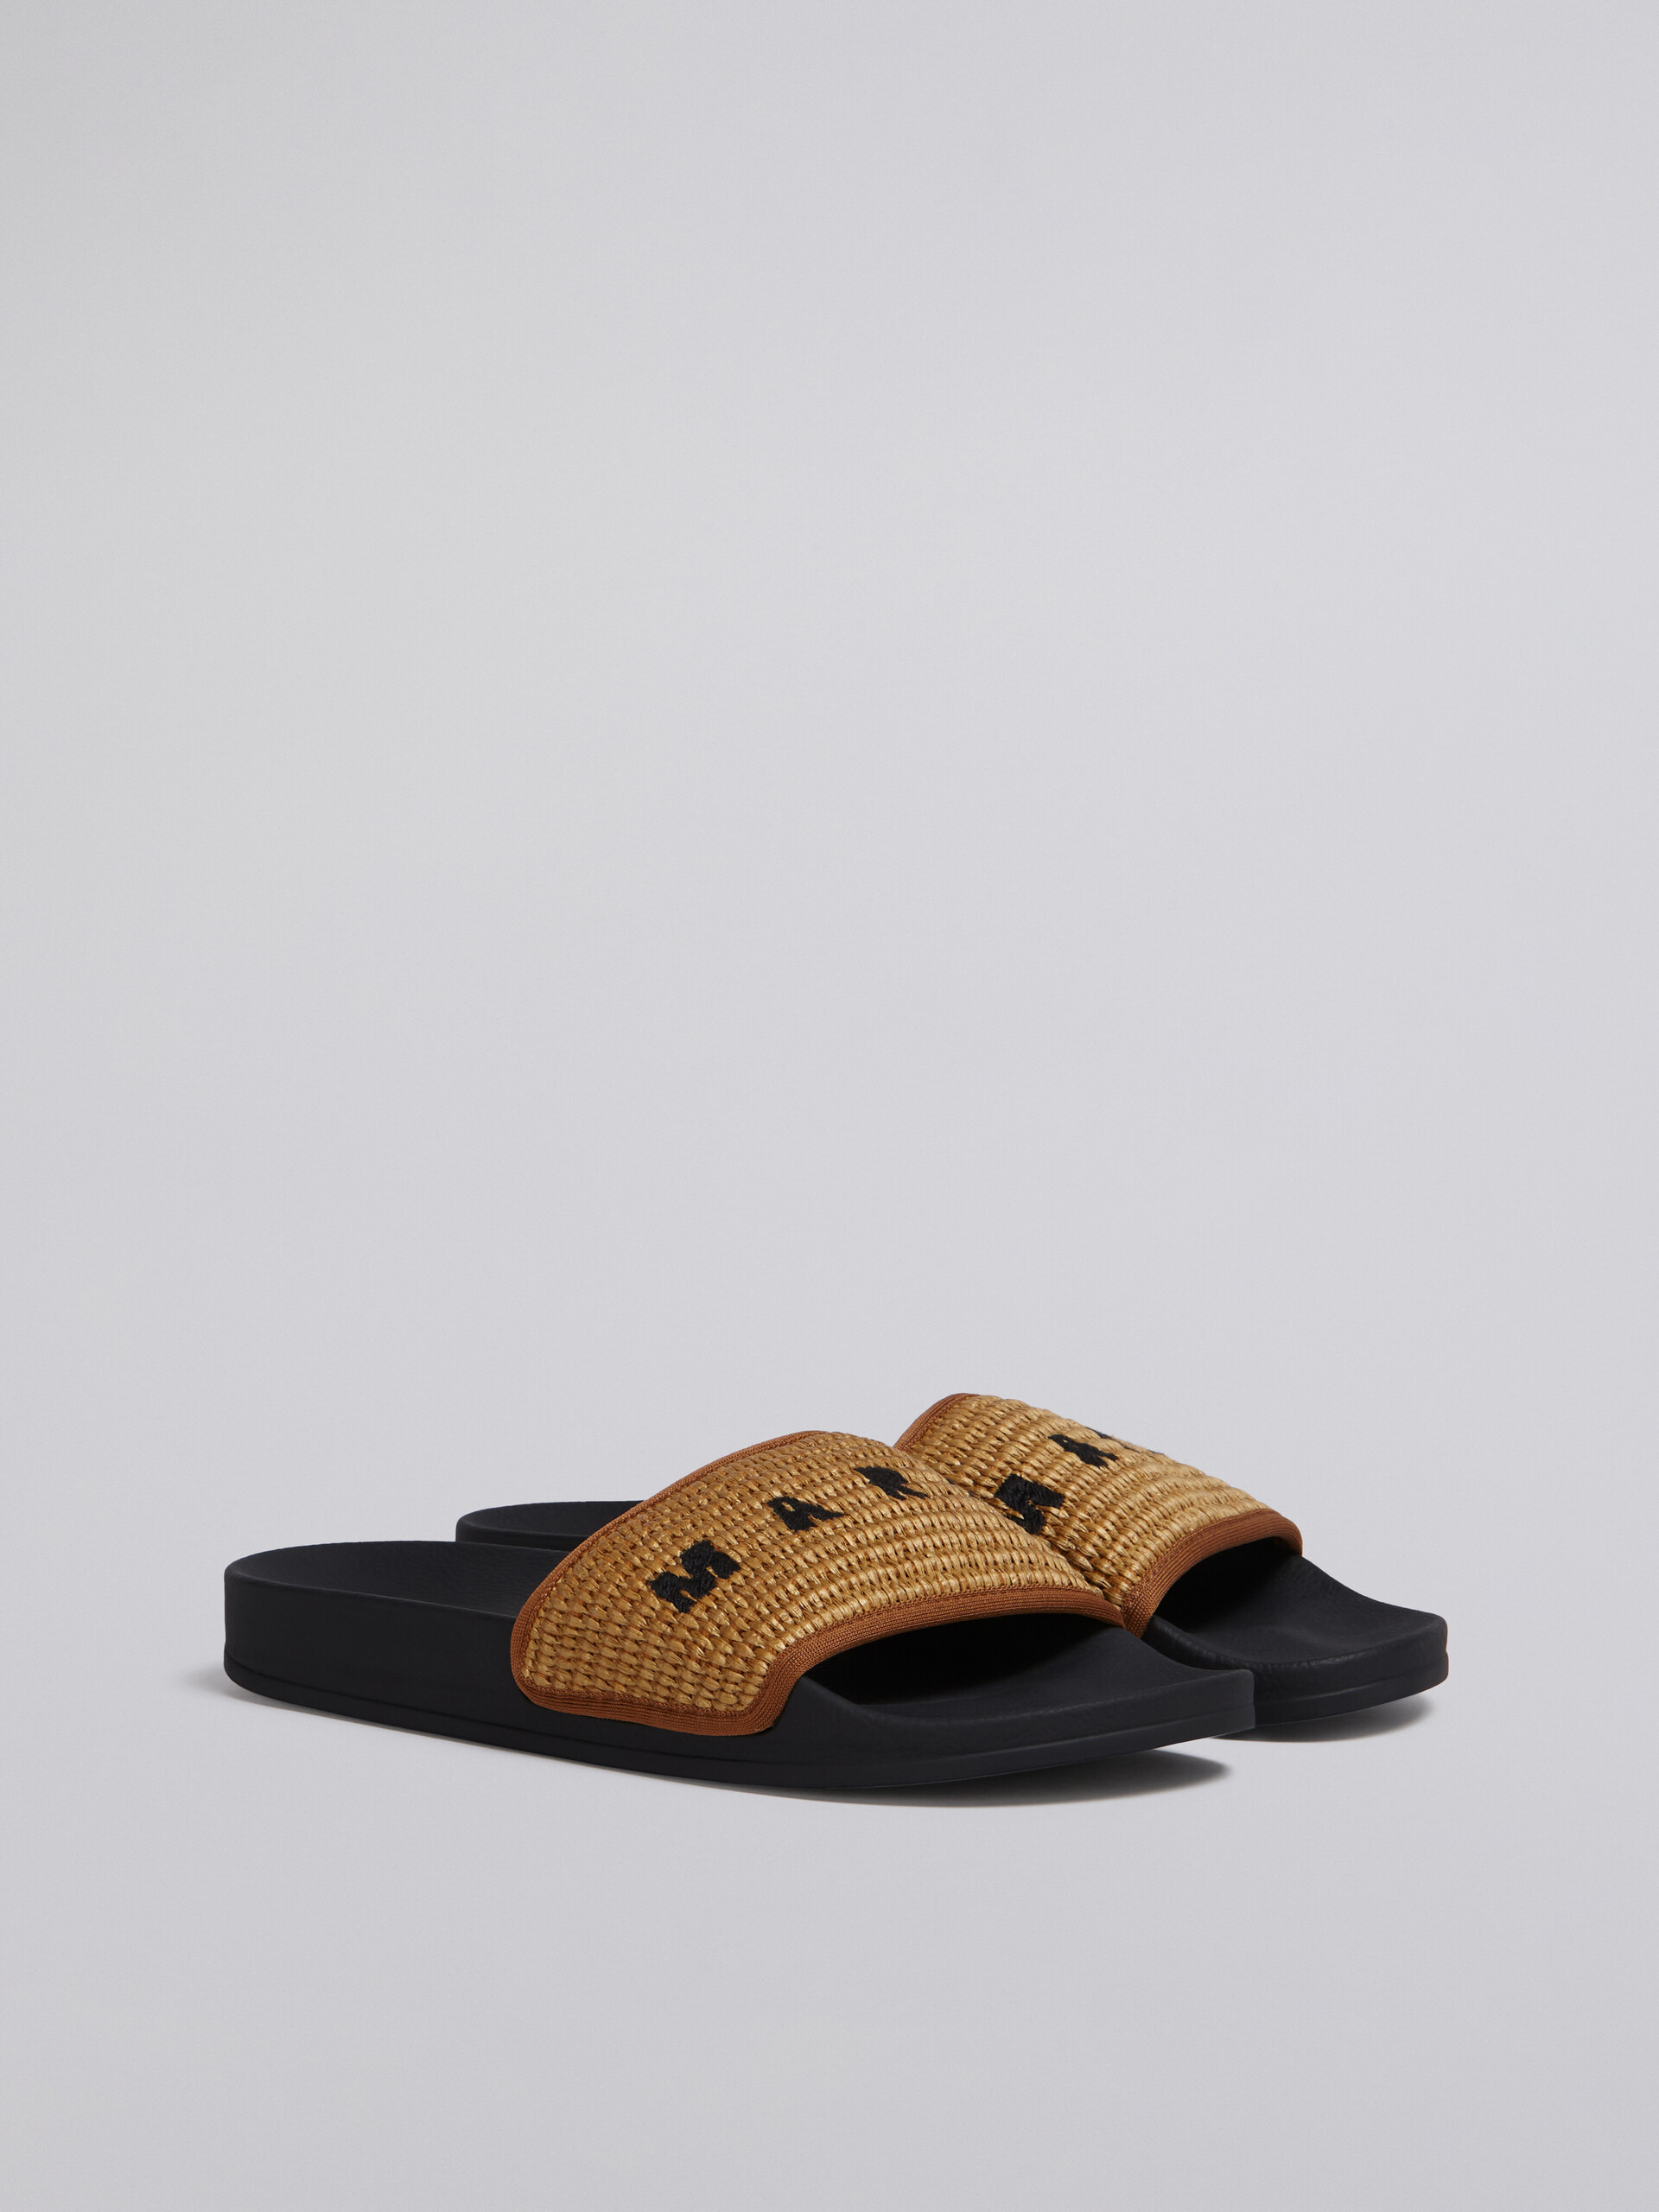 브라운 라피아 샌들 - Sandals - Image 2